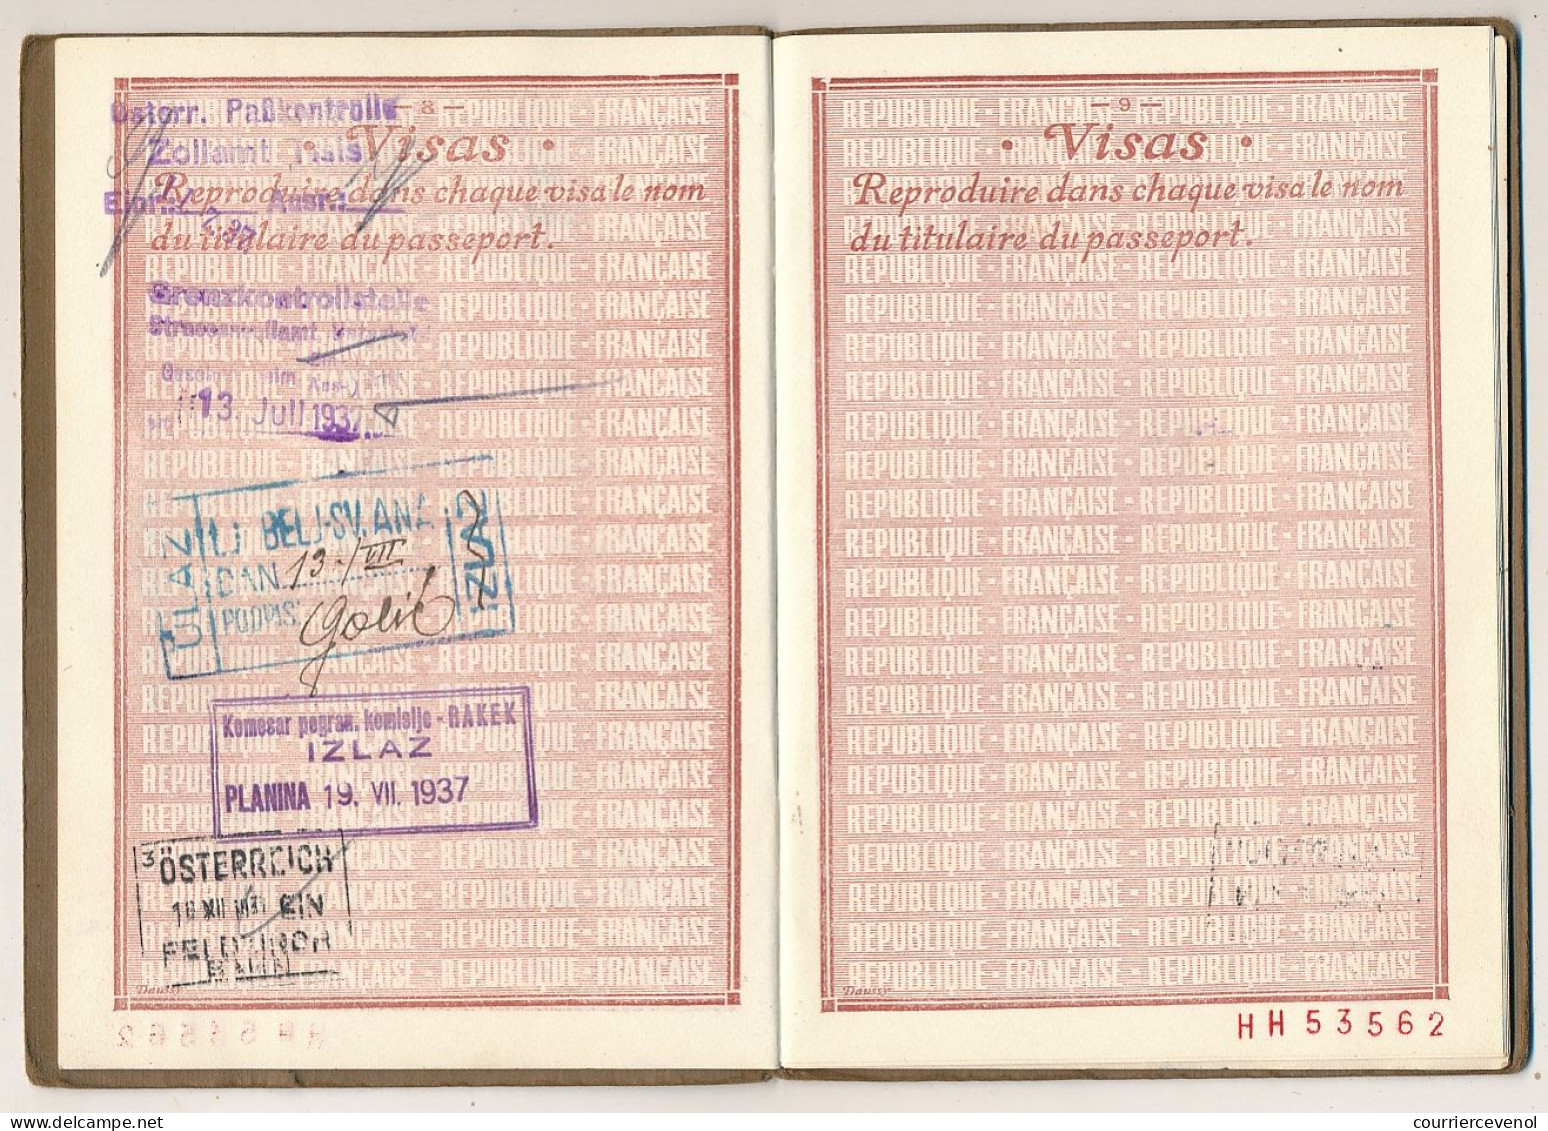 FRANCE - Passeport 20 francs 1936/1939 Paris - Fiscaux renouvellement 20 francs et 38 francs - pas valable pour Espagne.